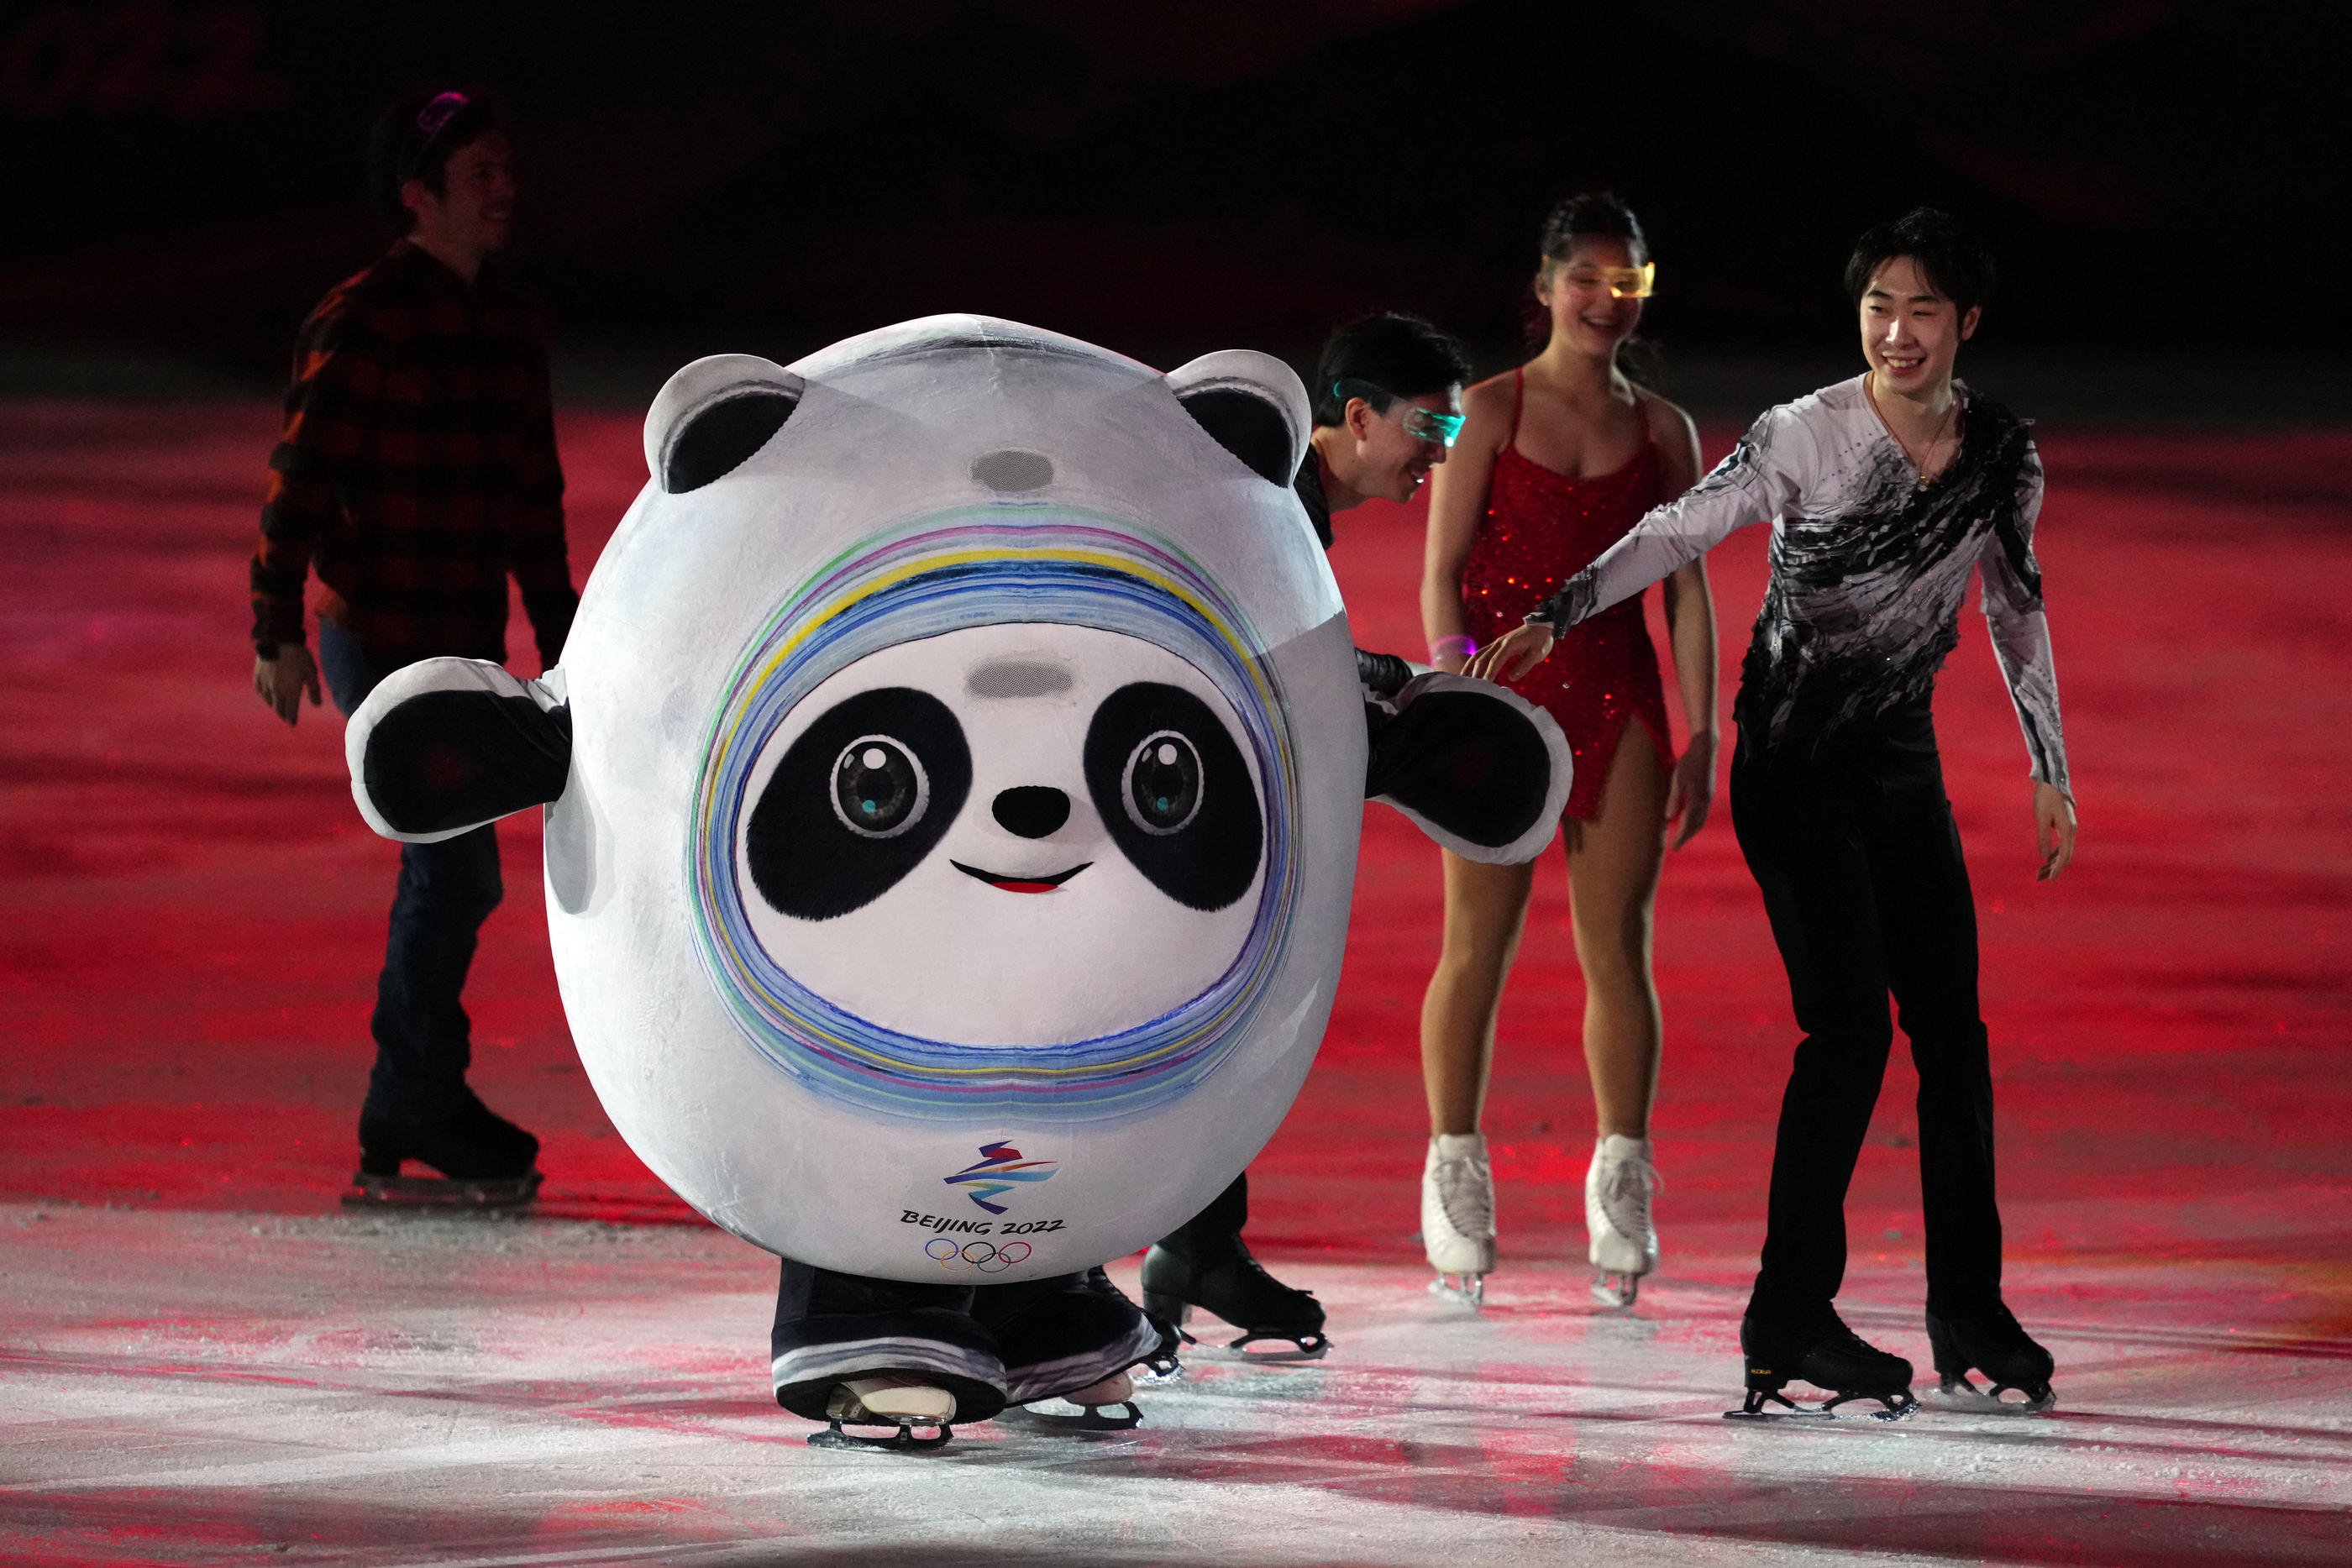 Paris 2024 on X: Découvrez les nouvelles mascottes des Jeux d'hiver de  Pékin 2022 ! Nous vous présentons Bing Dwen Dwen pour les Jeux Olympiques  et Shuey Rhon Rhon pour les Jeux